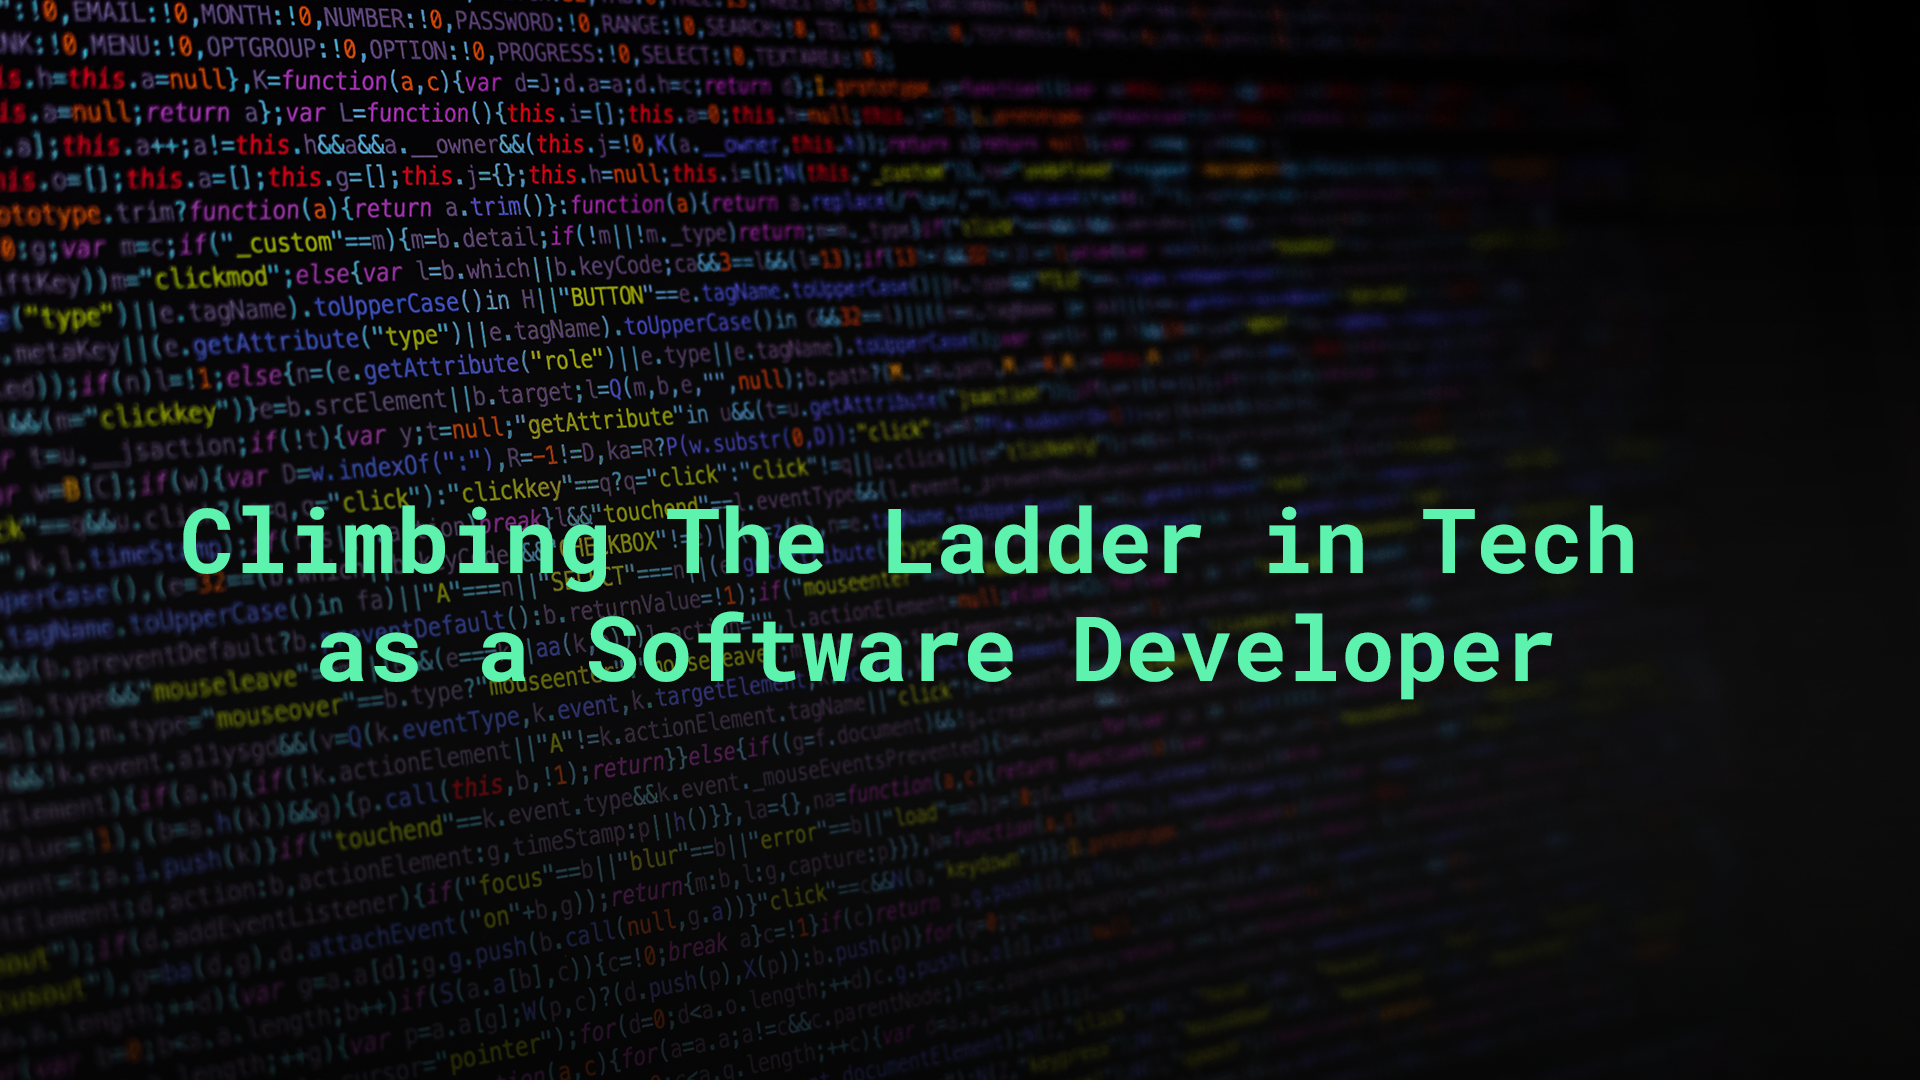 Climbing the tech ladder as a software developer